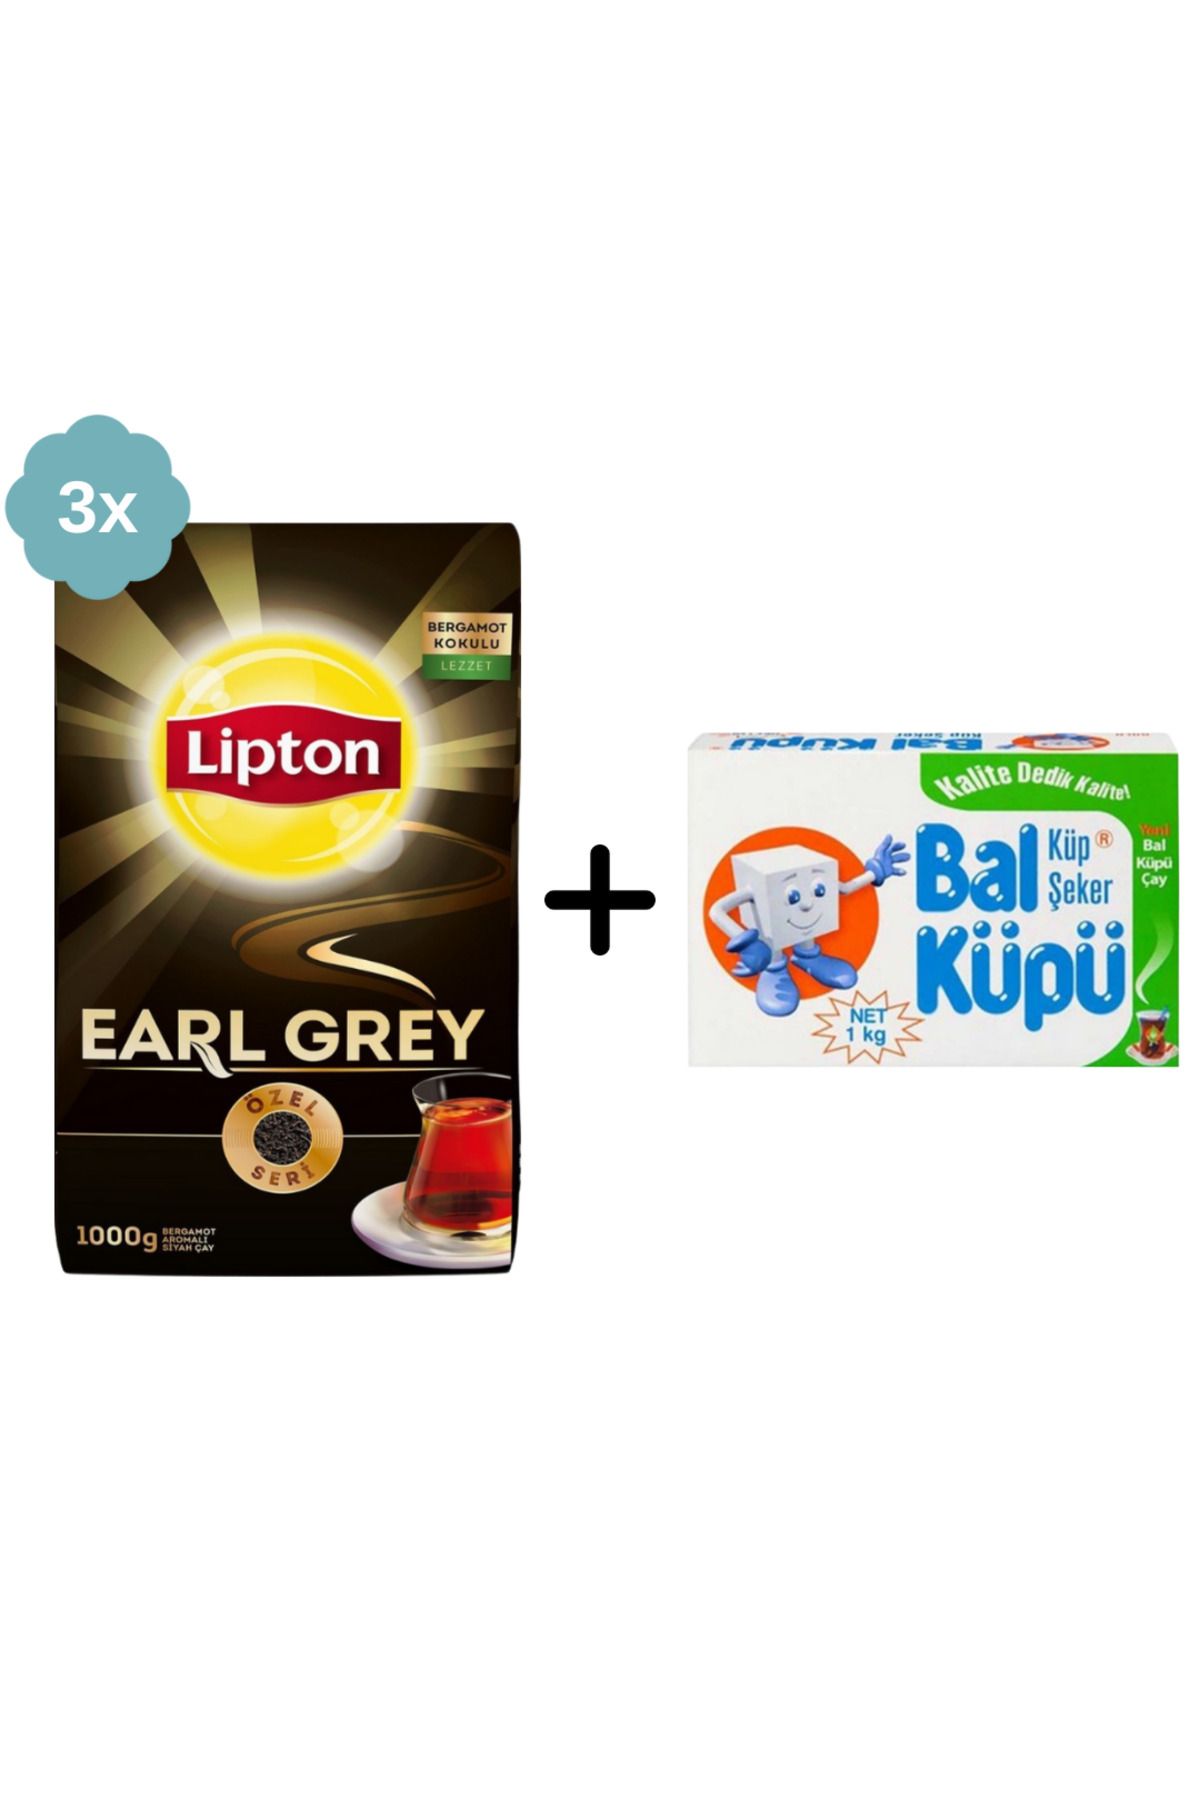 Lipton Earl Grey Dökme Siyah Çay 1000 gr x 3 Adet + Balküpü Kesme Şeker 1000 gr